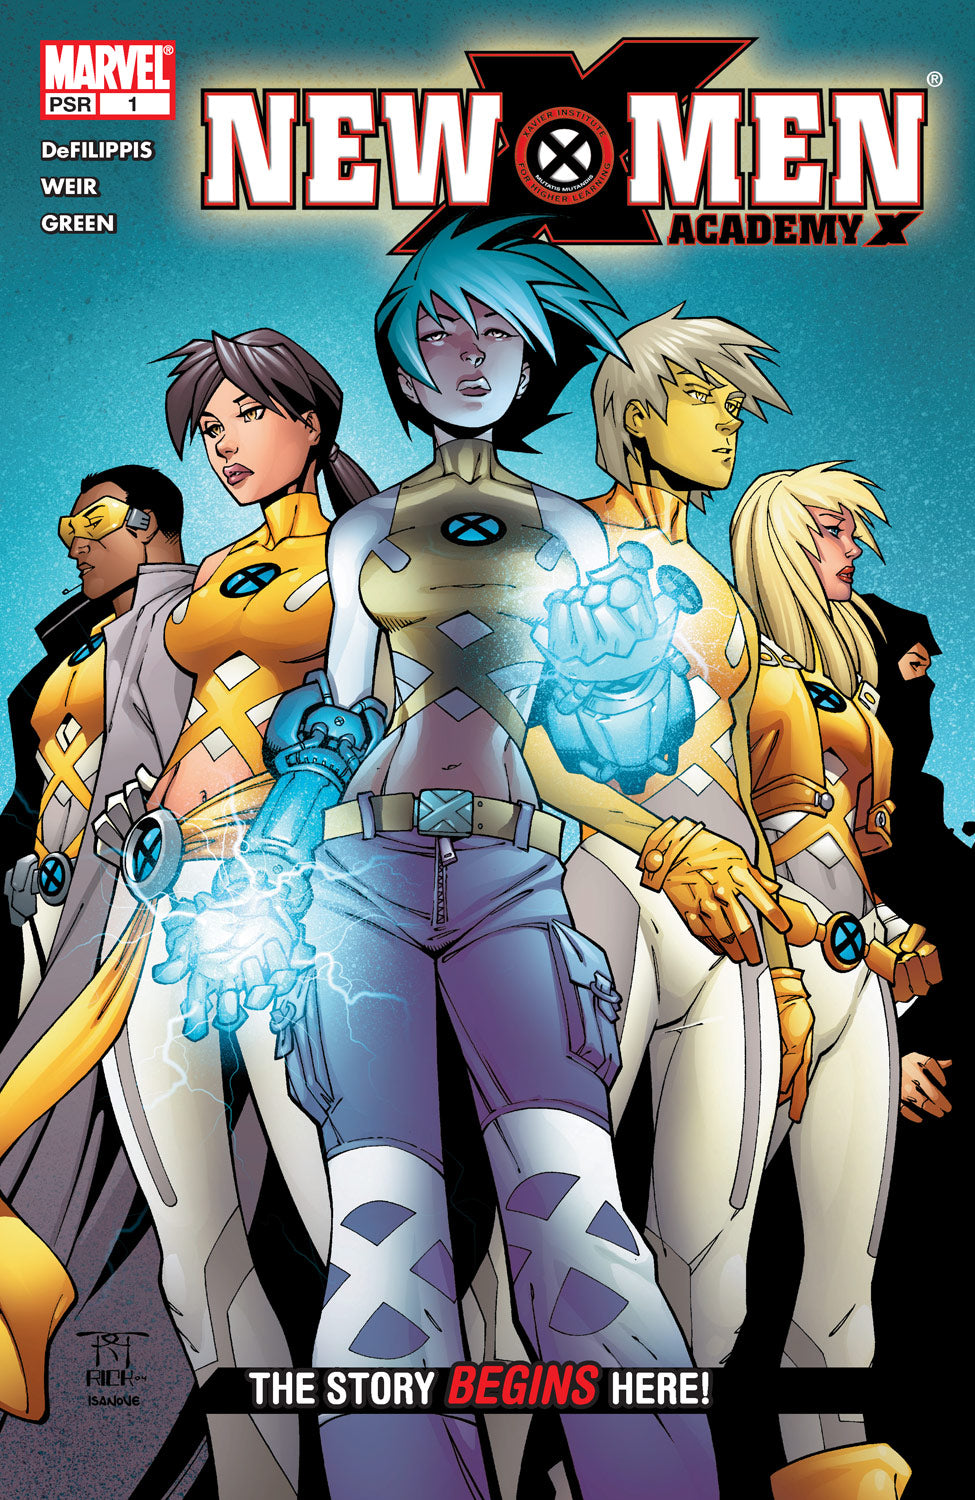 New X-Men (Academy X) #1A